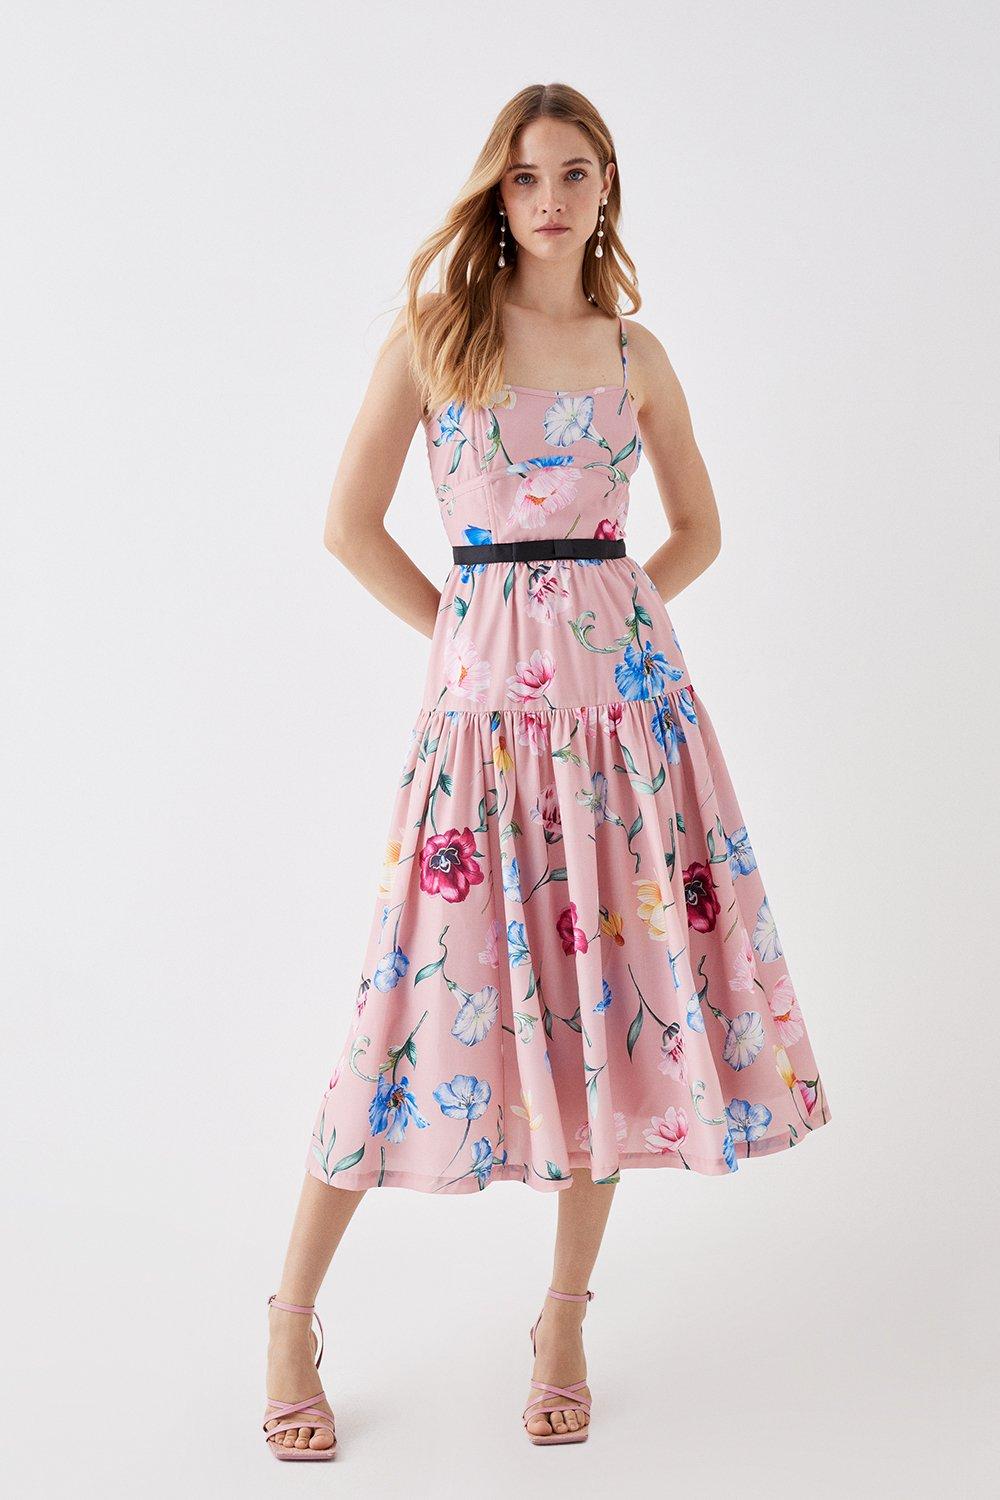 Хлопковое платье миди на бретелях The Collector Coast, розовый платье миди с цветами 42 44 размер